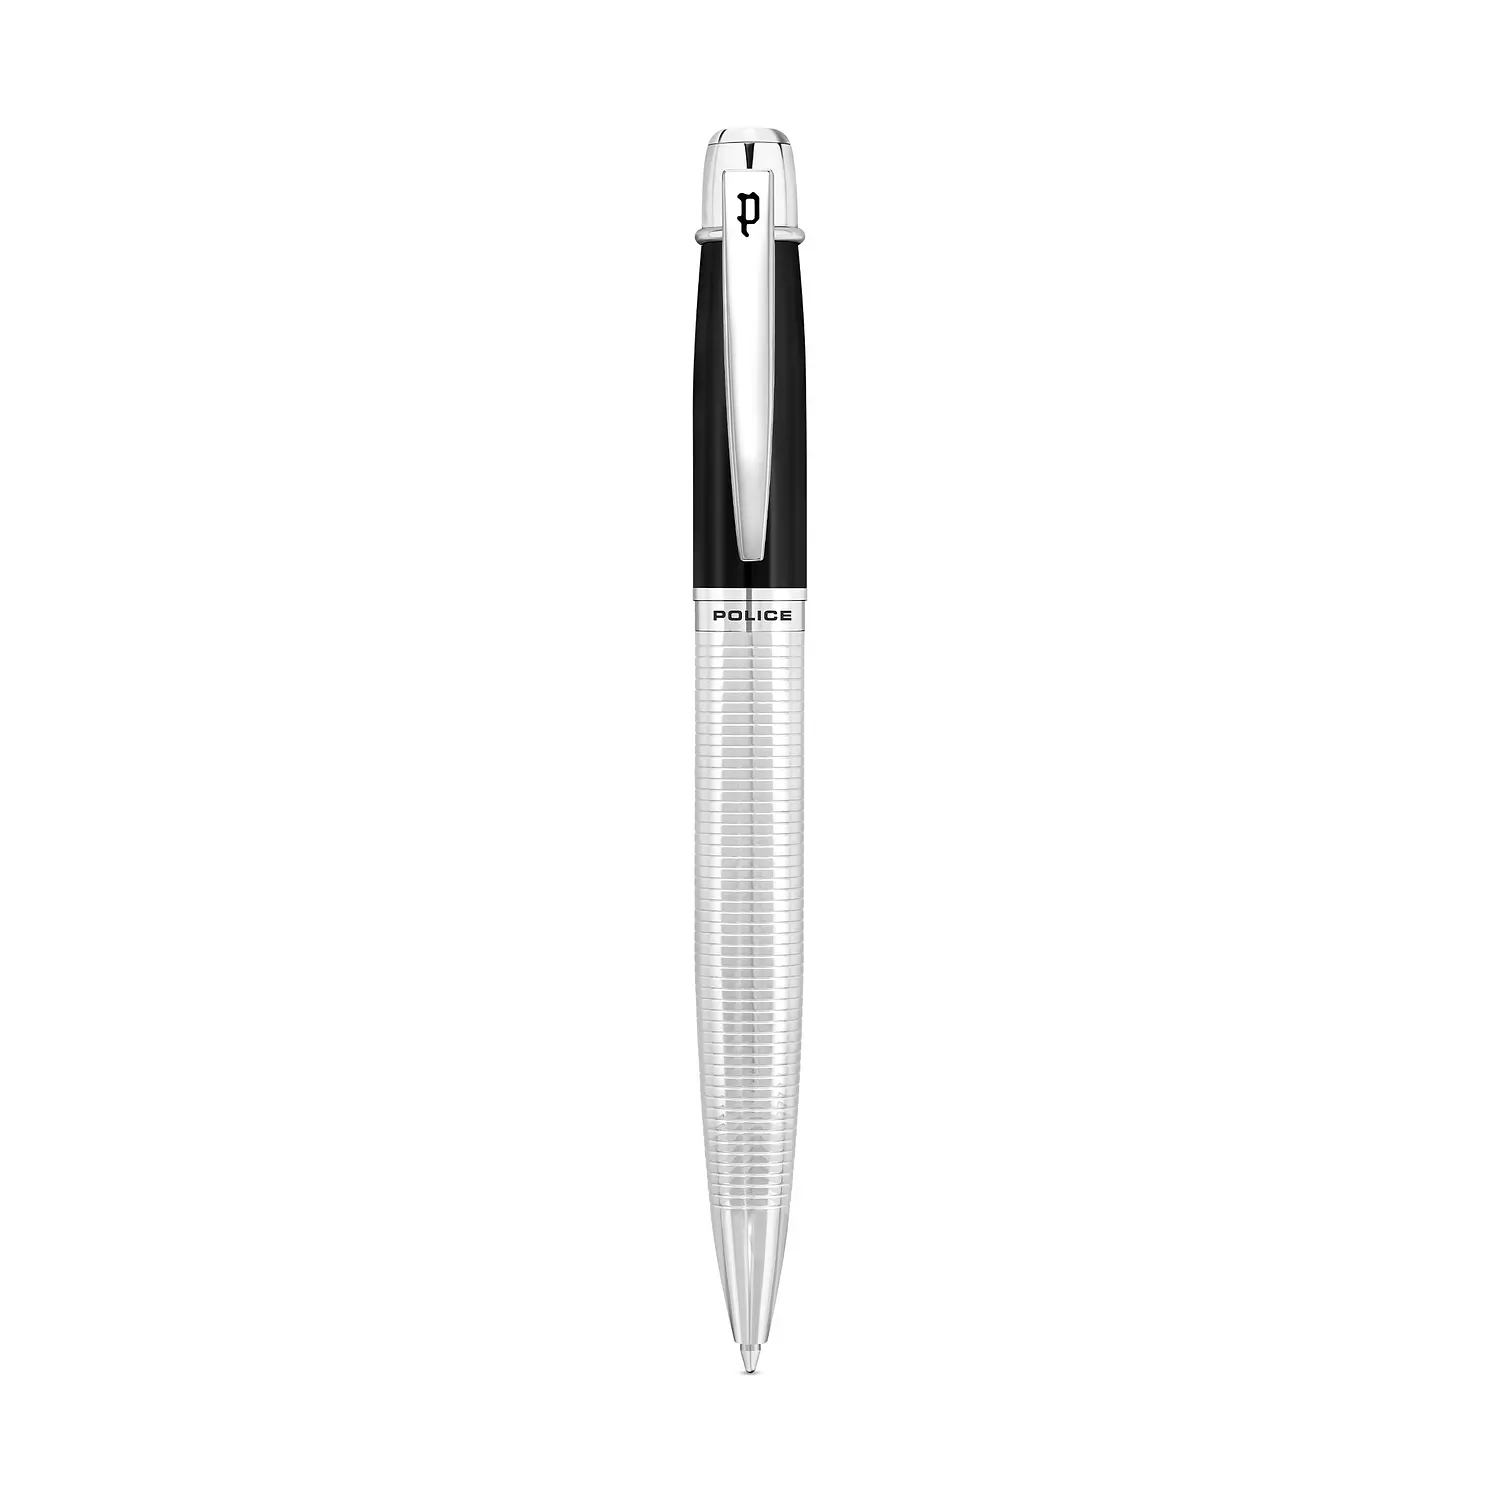 POLICE - Takota Pen For Men Black & Silver Color - PERGR0001401 hover image